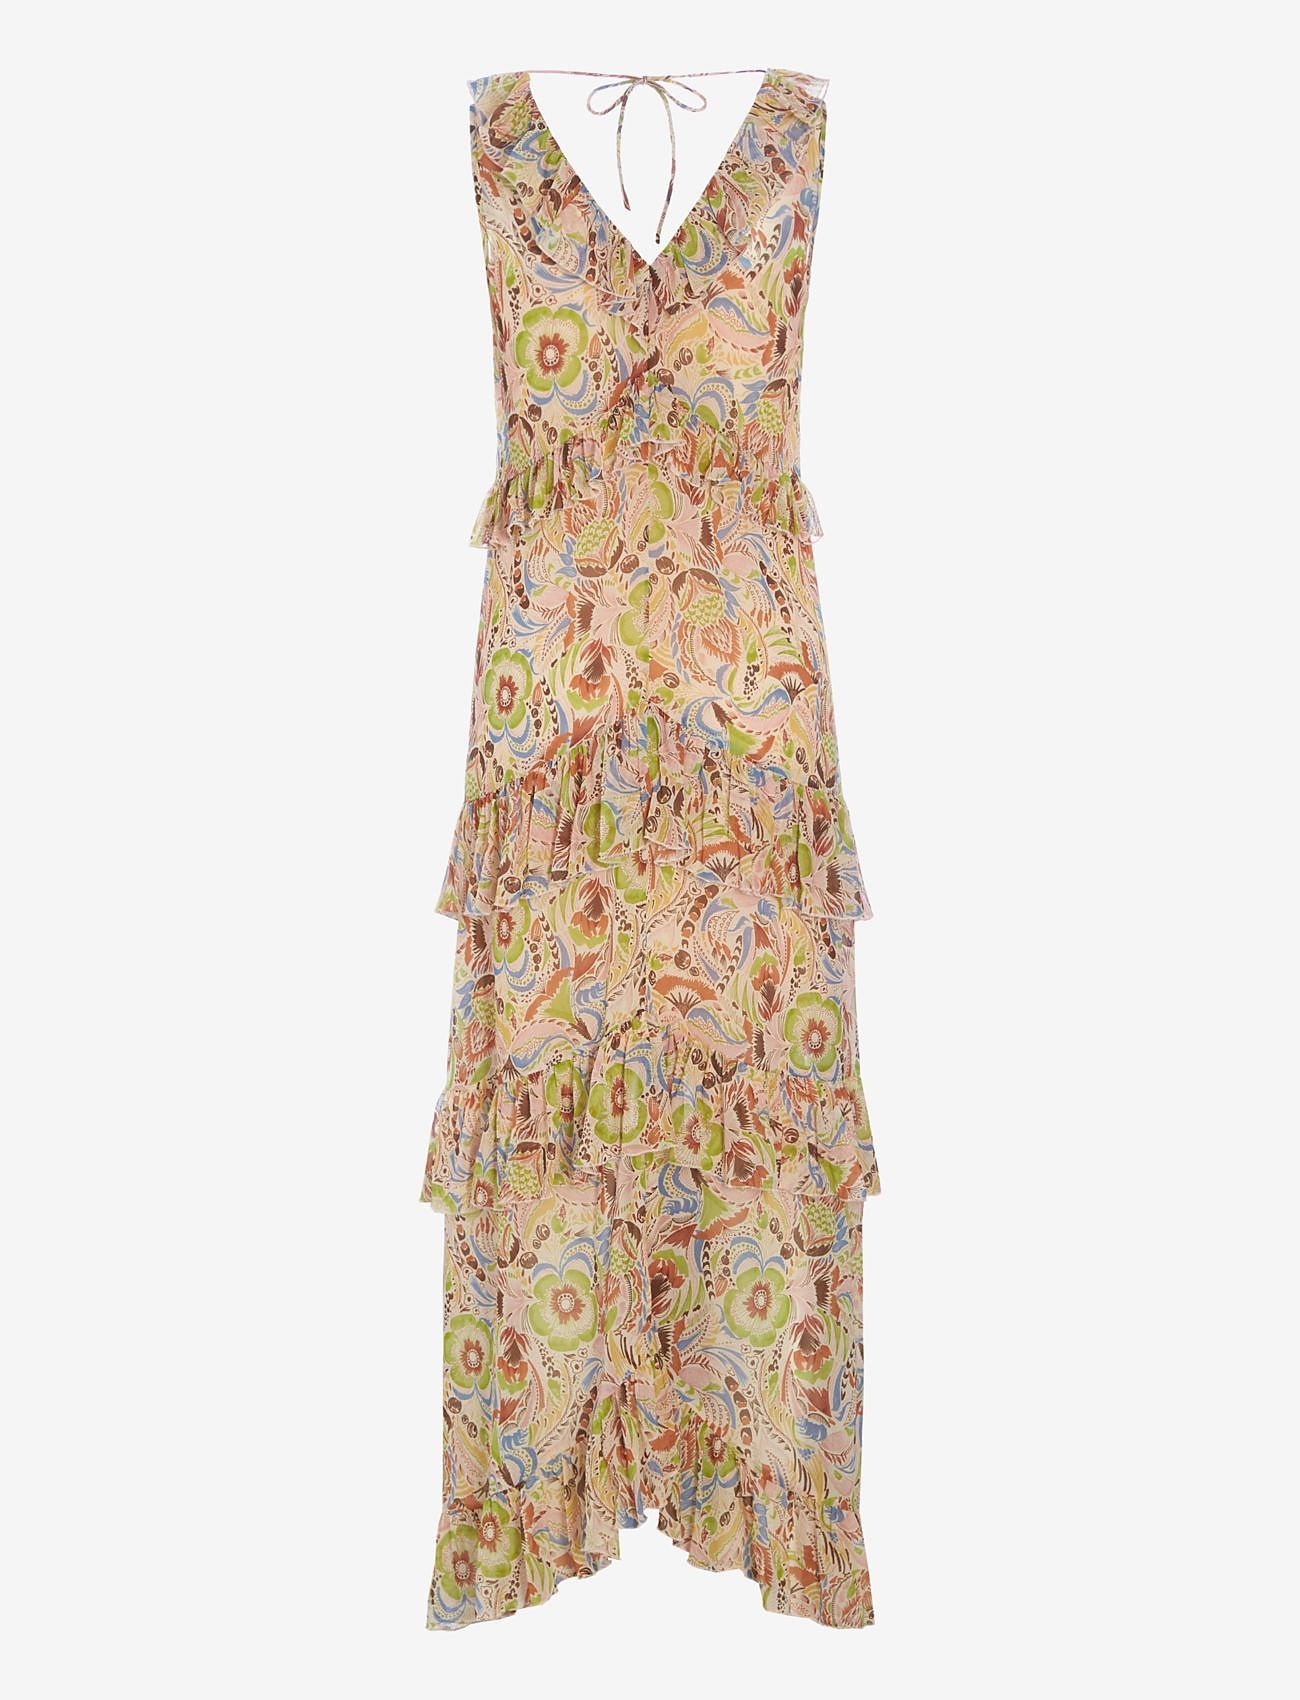 Dea Kudibal - FRANKIE - ilgos suknelės - anemone lime - 1